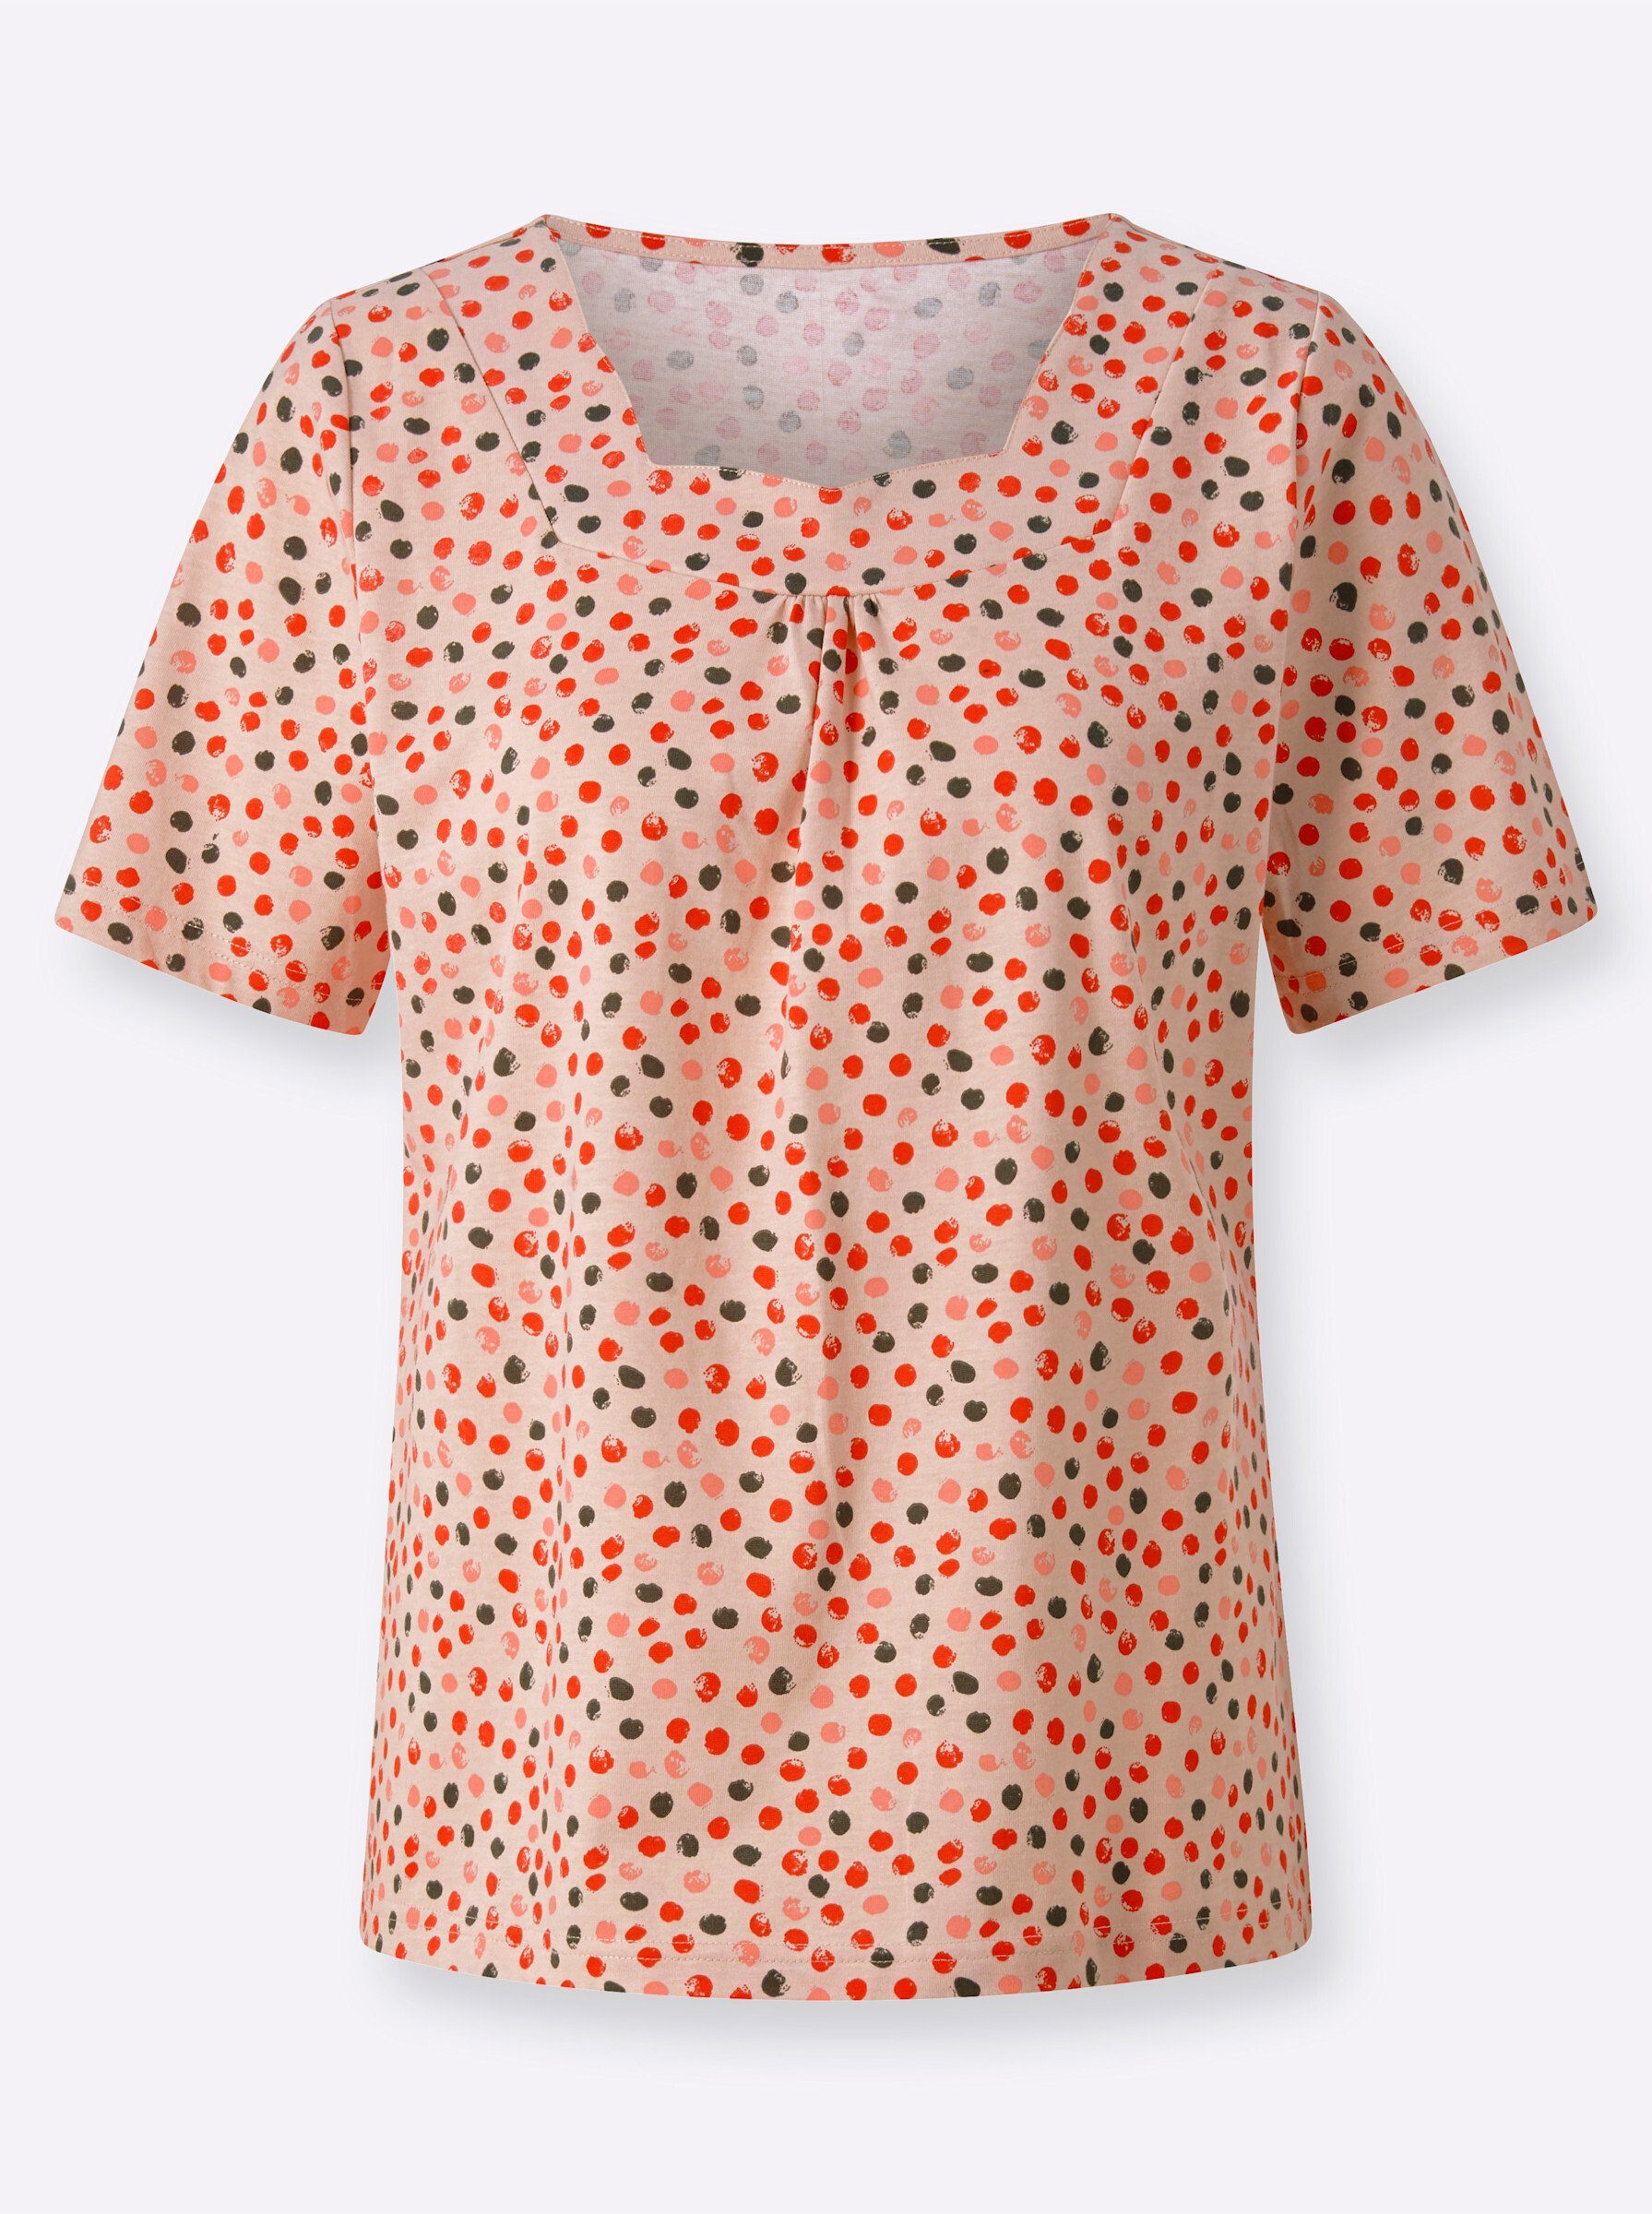 WEIDEN T-Shirt puder-erdbeere-bedruckt WITT